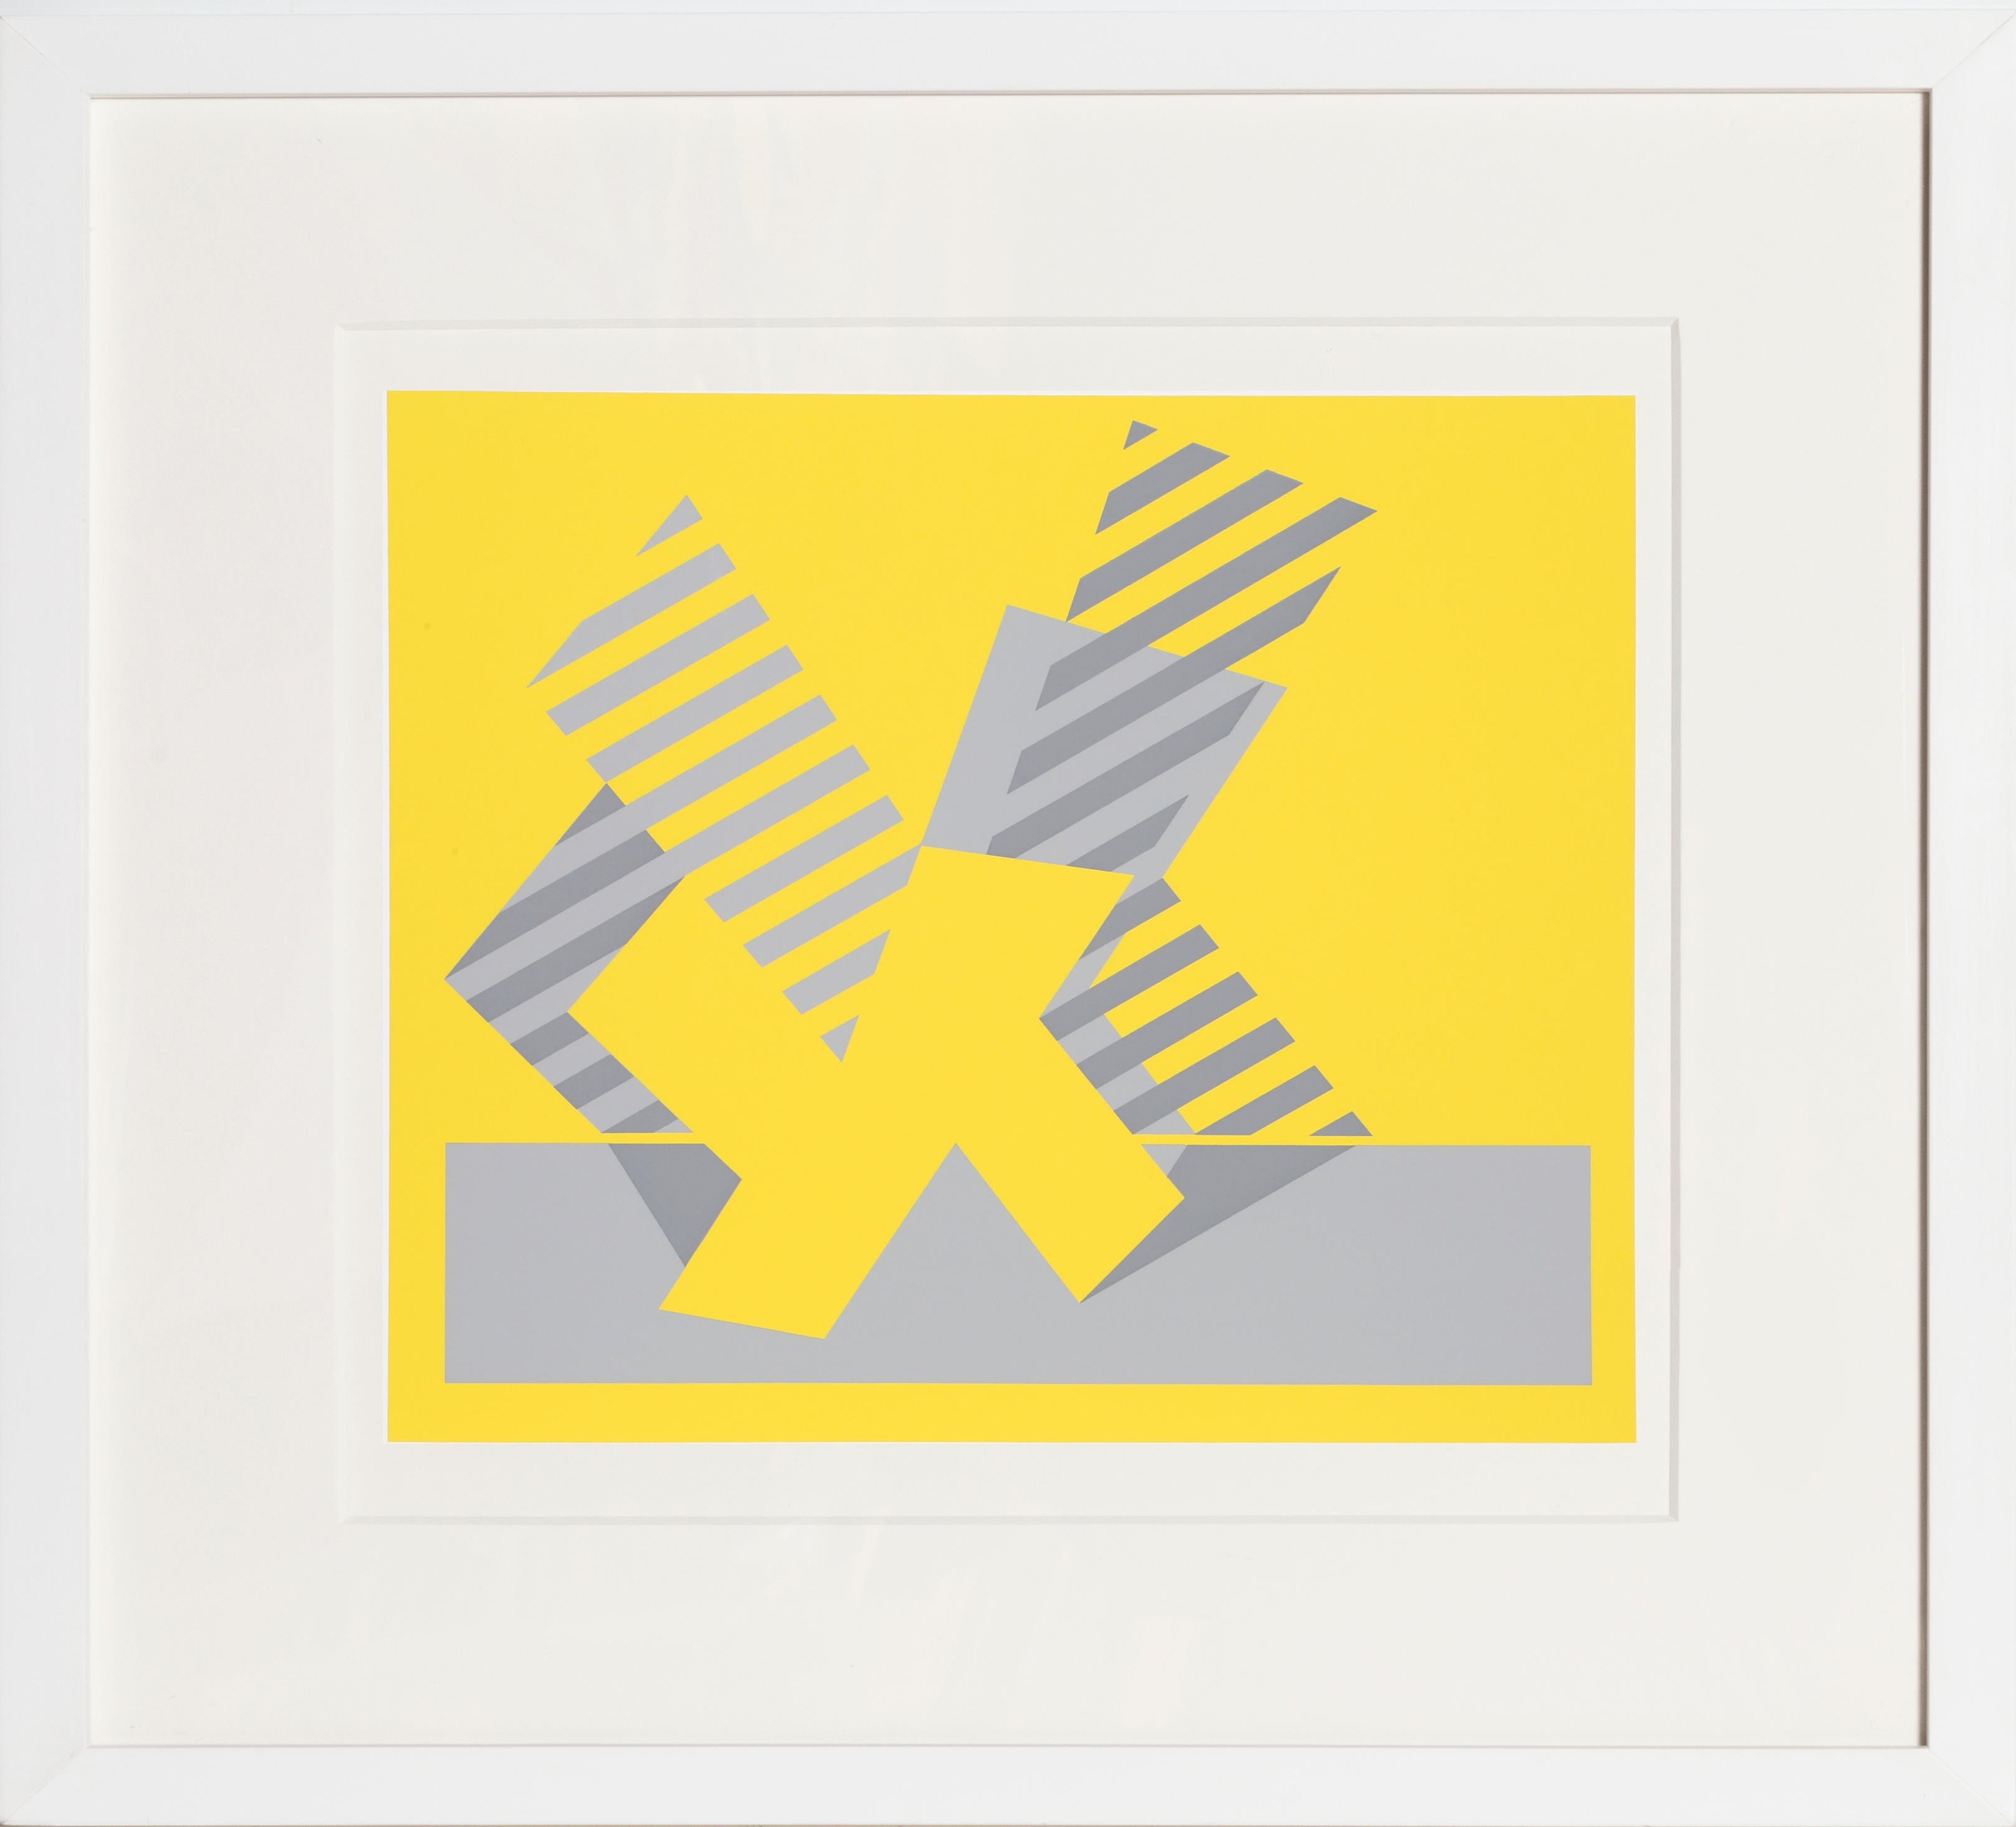 Künstler: Josef Albers, Deutscher (1888 - 1976)
Titel: K - P1, F4, I1
Jahr: 1972
Auflagenhöhe: 1000
Medium: Siebdruck auf Mohawk Superfine Bristol Papier
Bildgröße: 12 x 14 Zoll
Größe: 15 x 20 Zoll (38,1 x 50,8 cm)
Rahmengröße: 22 x 24